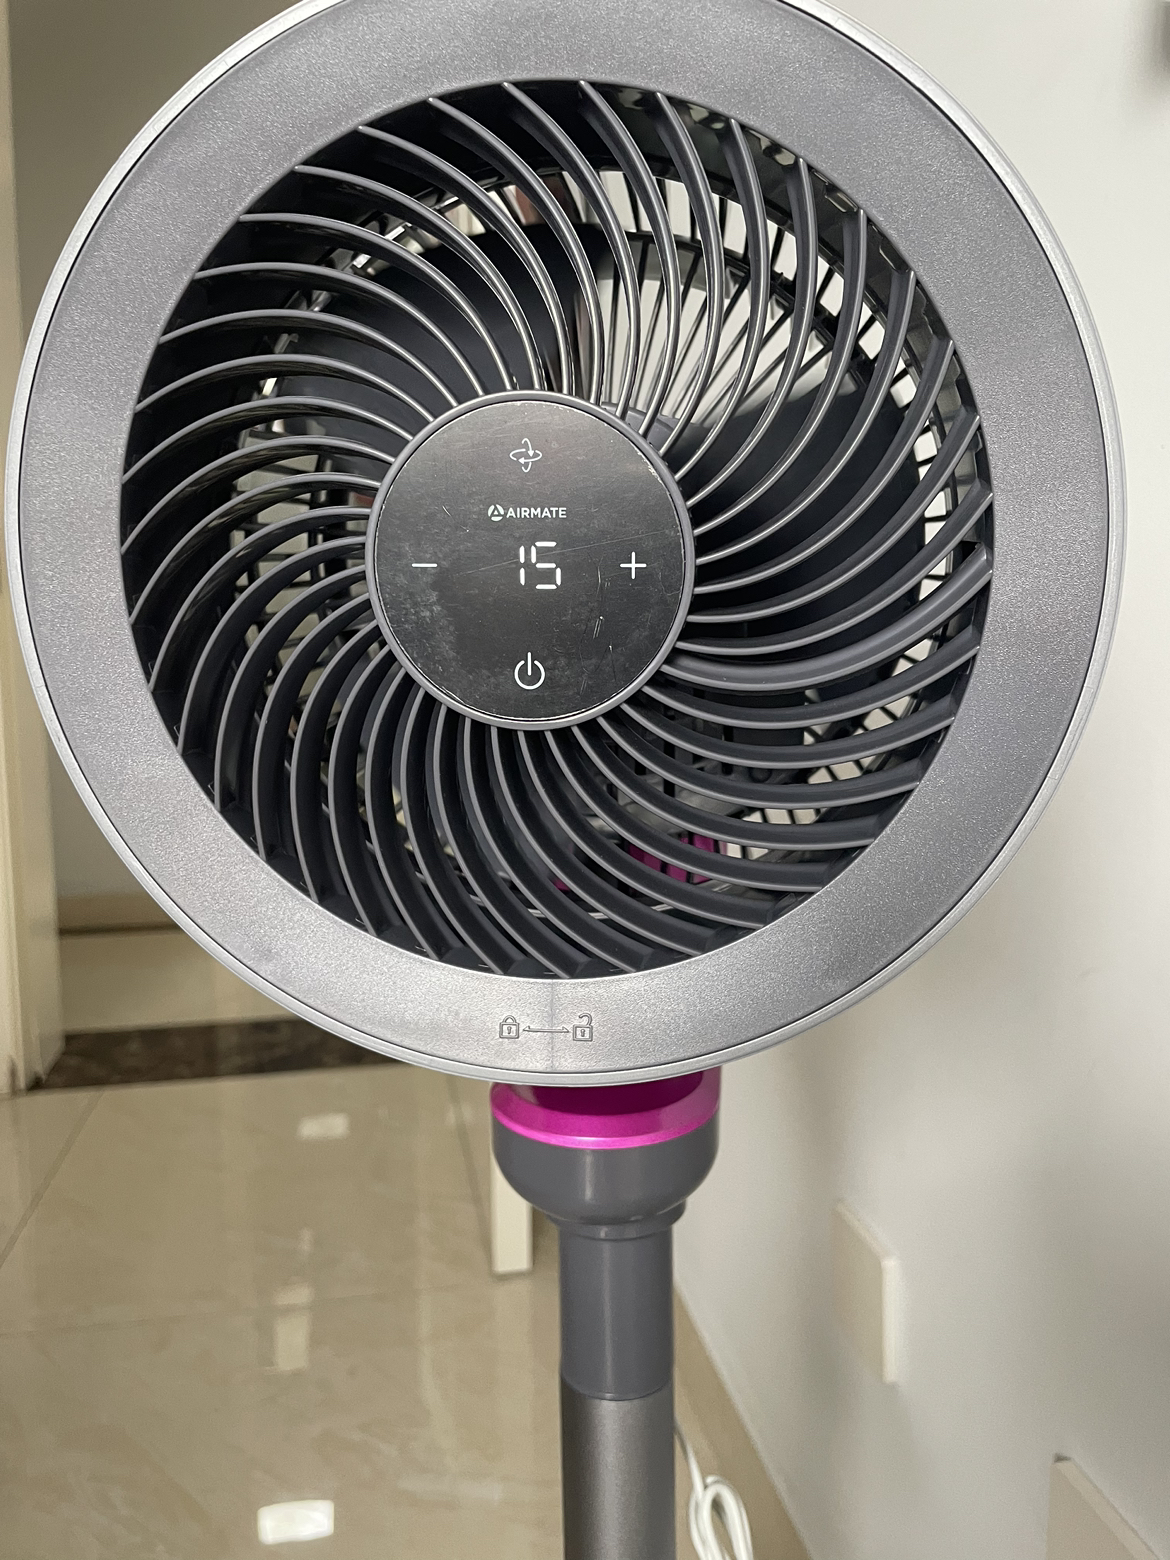 艾美特空气循环扇32档直流变频触控遥控360°摇头电风扇家用涡轮换气扇循环对流负离子净化 FA18-RD70 PRO紫色晒单图